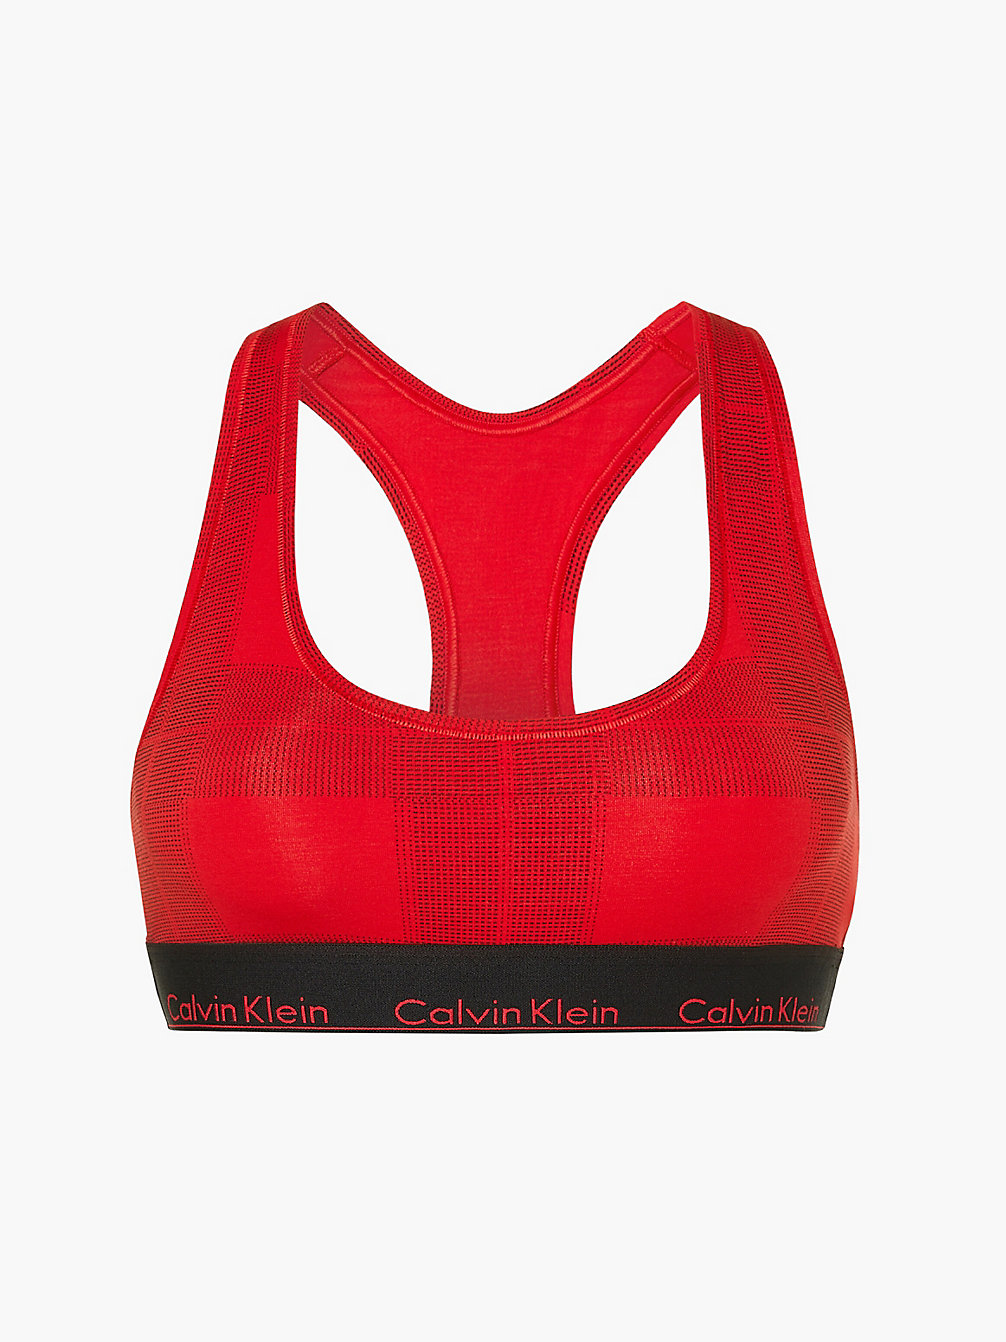 TEXTURED PLAID_EXACT Brassière - Modern Cotton undefined femmes Calvin Klein